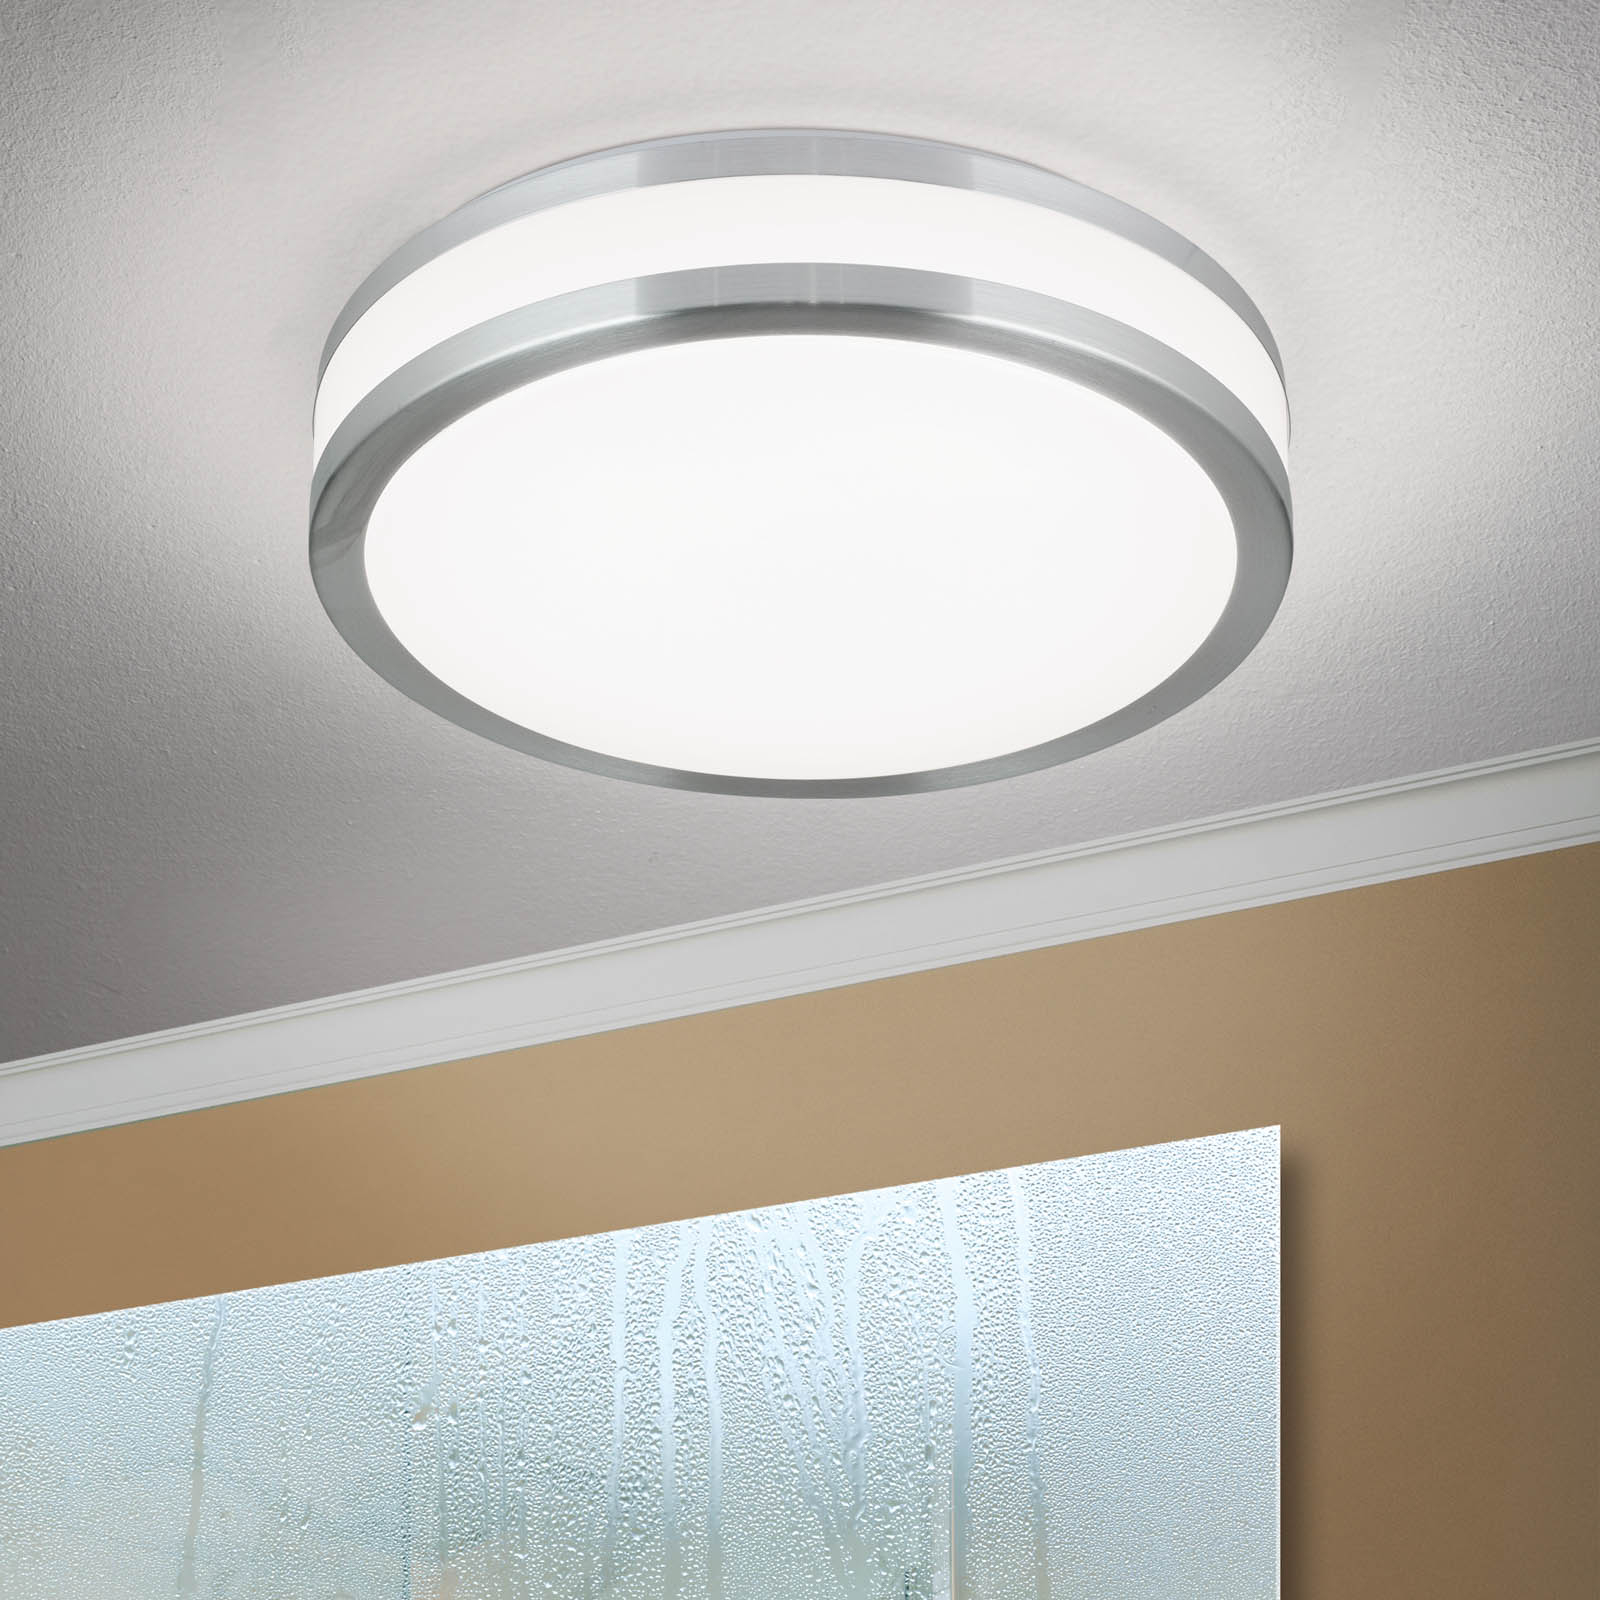 LED ceiling light Nedo cylindrical, Ø 28.5 cm